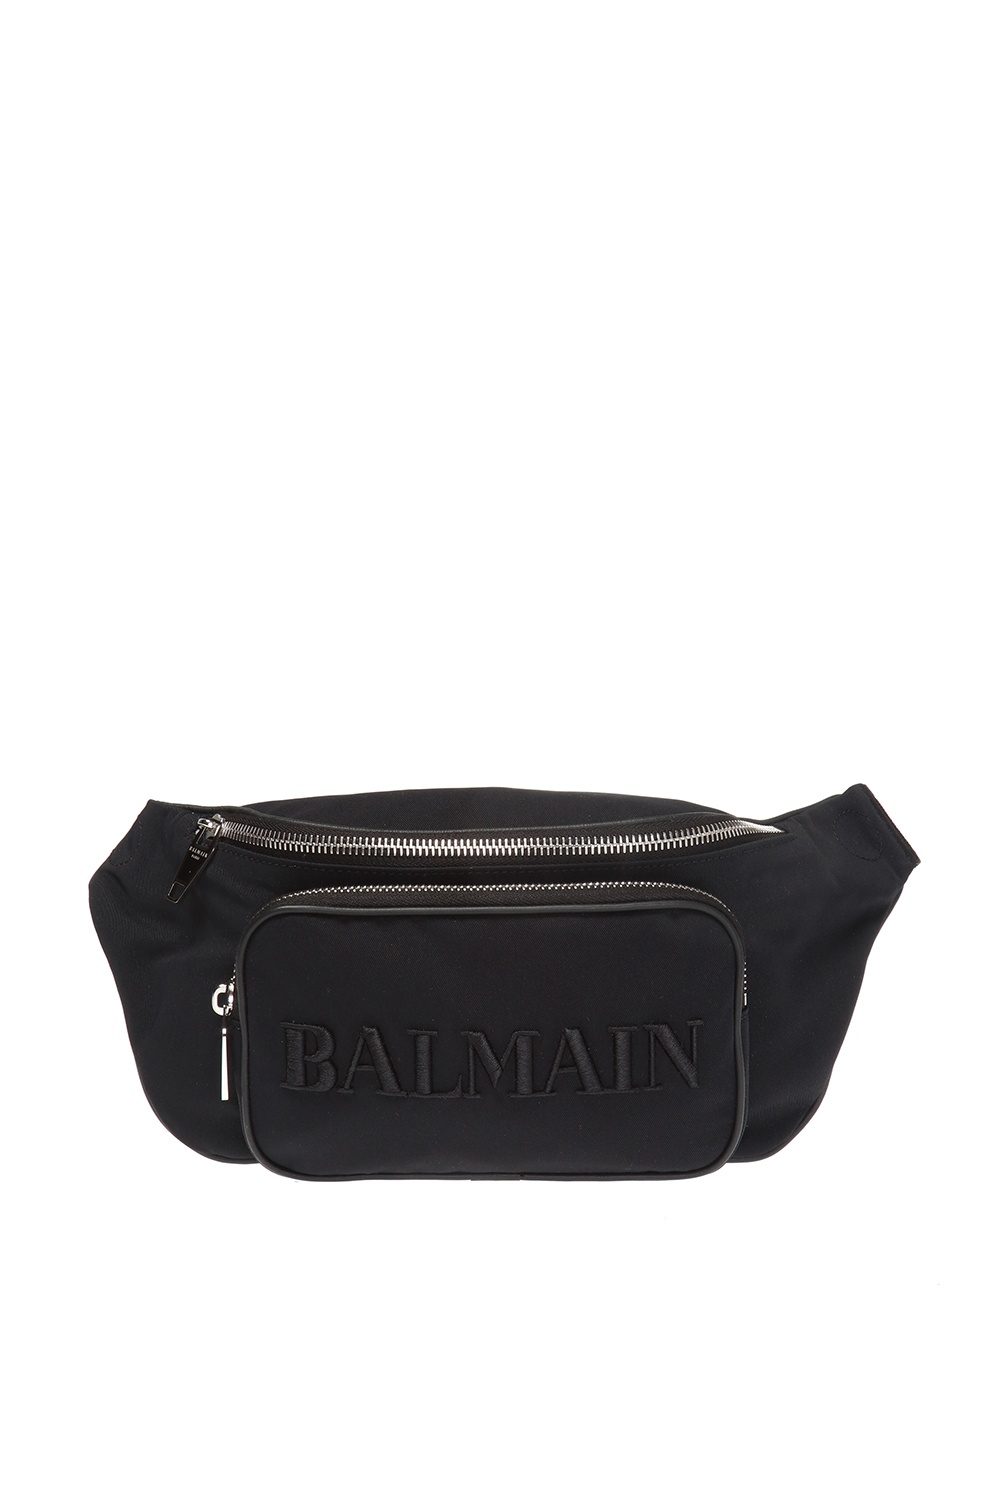 Balmain Monogrammed belt bag, Men's Bags